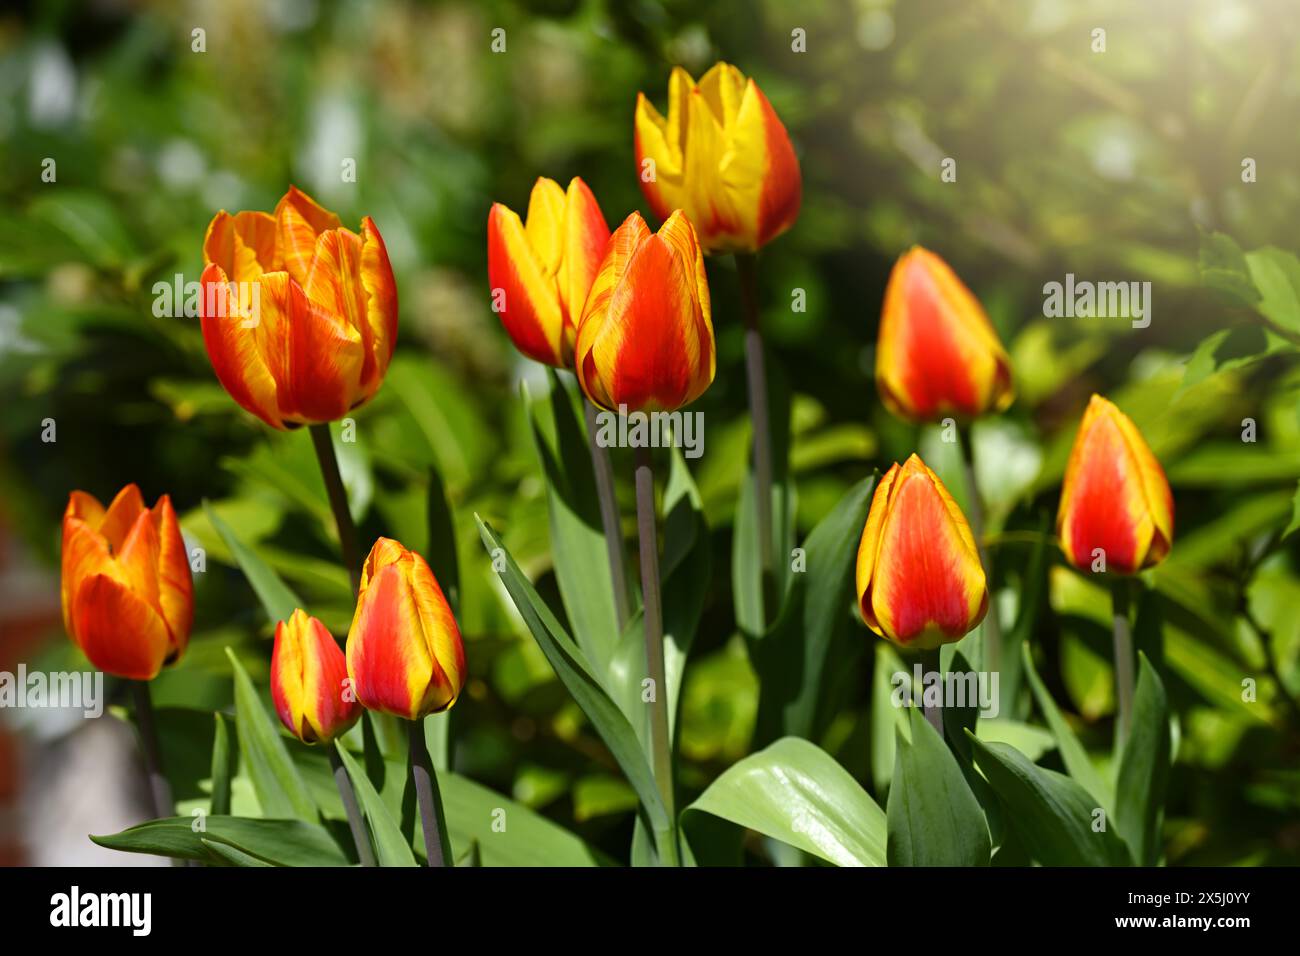 Rot-gelbe Tulpen, Tulipa, im Garten Banque D'Images